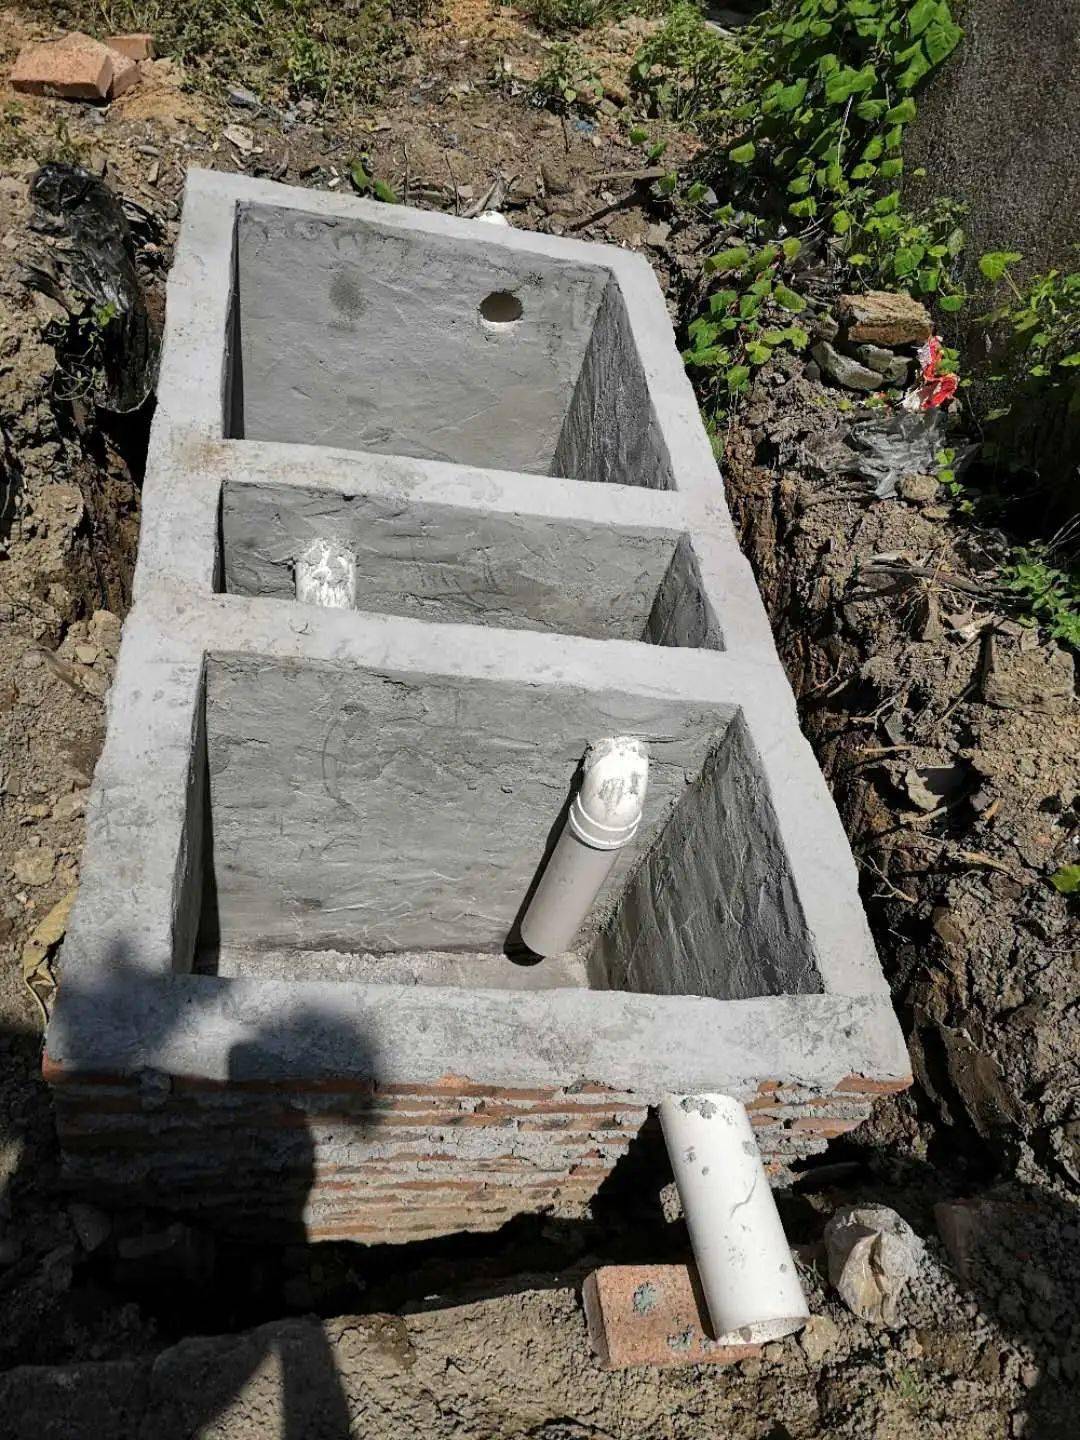 已建好的三格式化粪池图截止目前,今年我镇户厕建设共完成71个,在建户